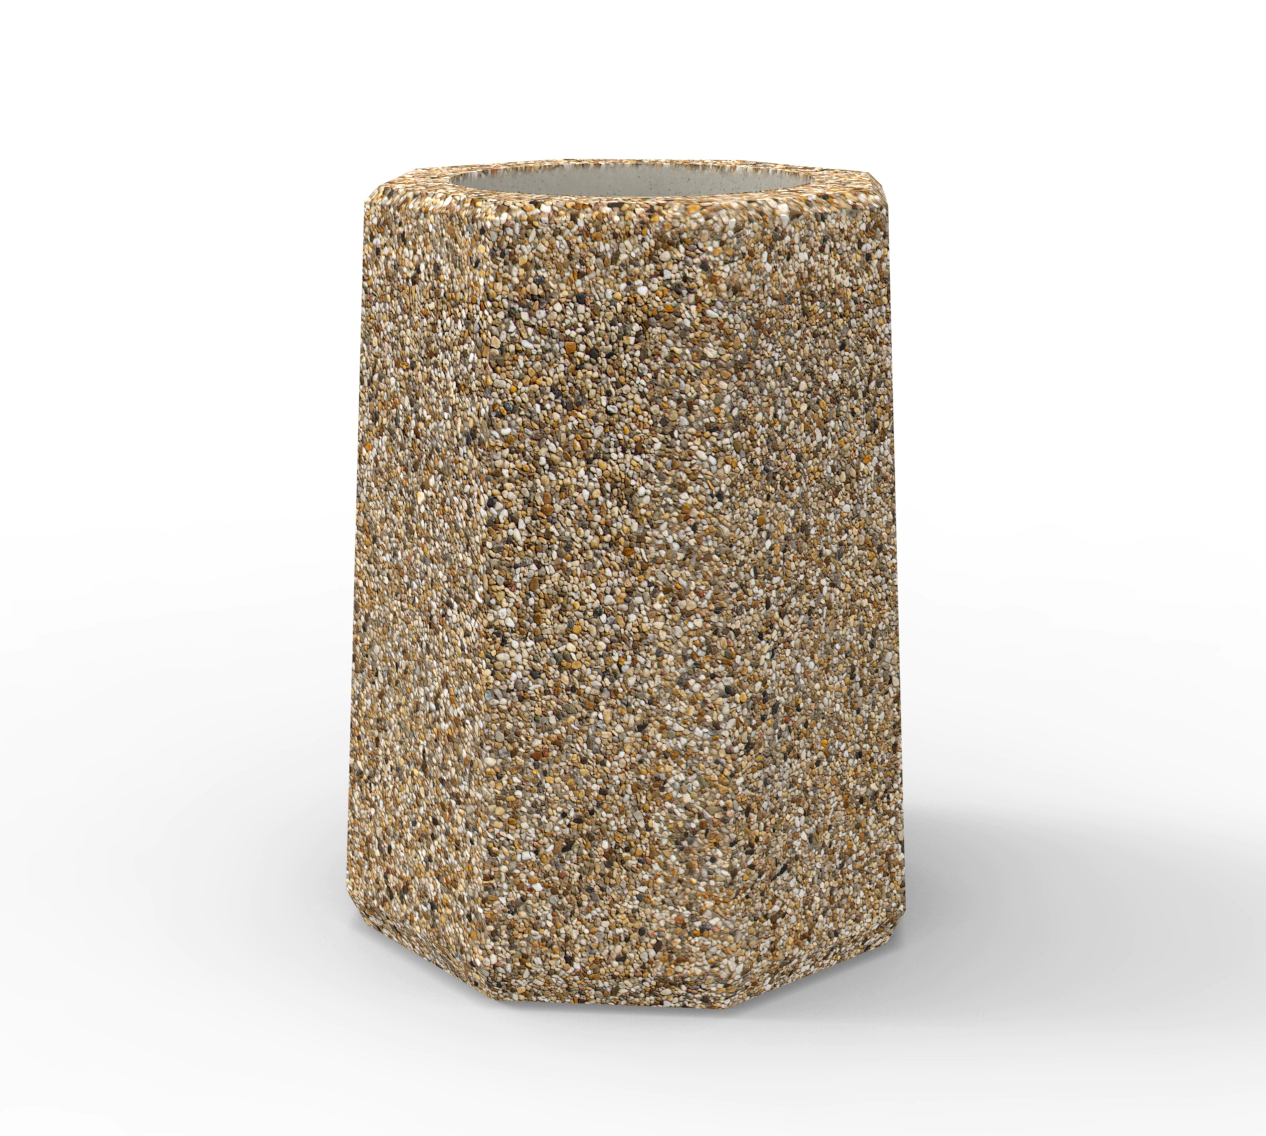 Masywny betonowy kosz na śmieci dostępny w różnorodnej palecie kolorów betonu płukanego.